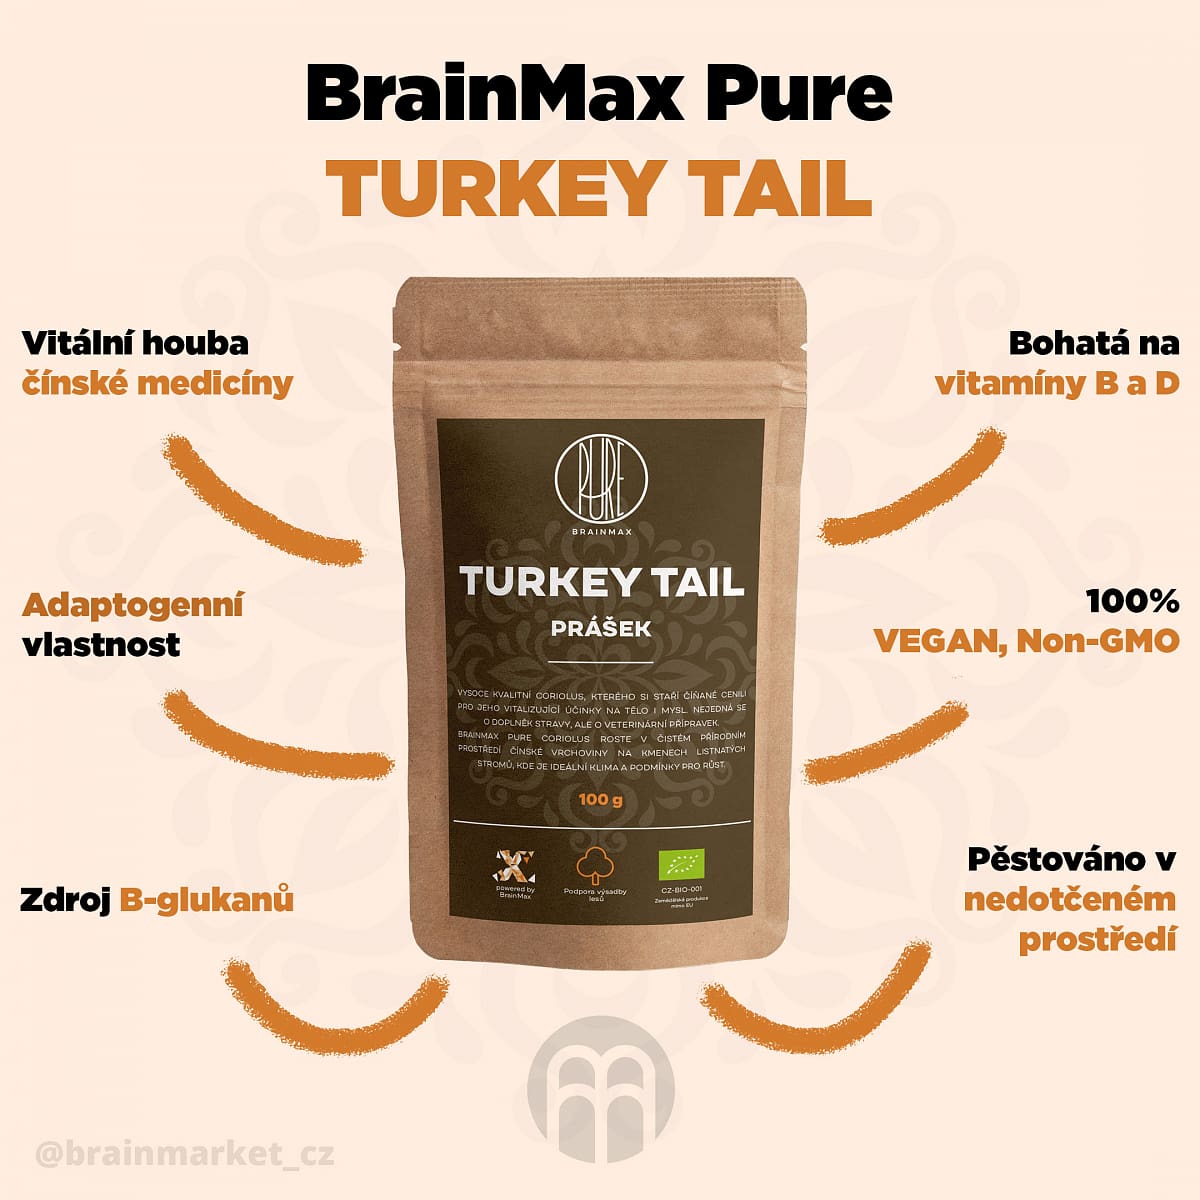 BrainMax Pure Turkey Tail (Coriolus) prášek, BIO, 100g *CZ-BIO-001 certifikát